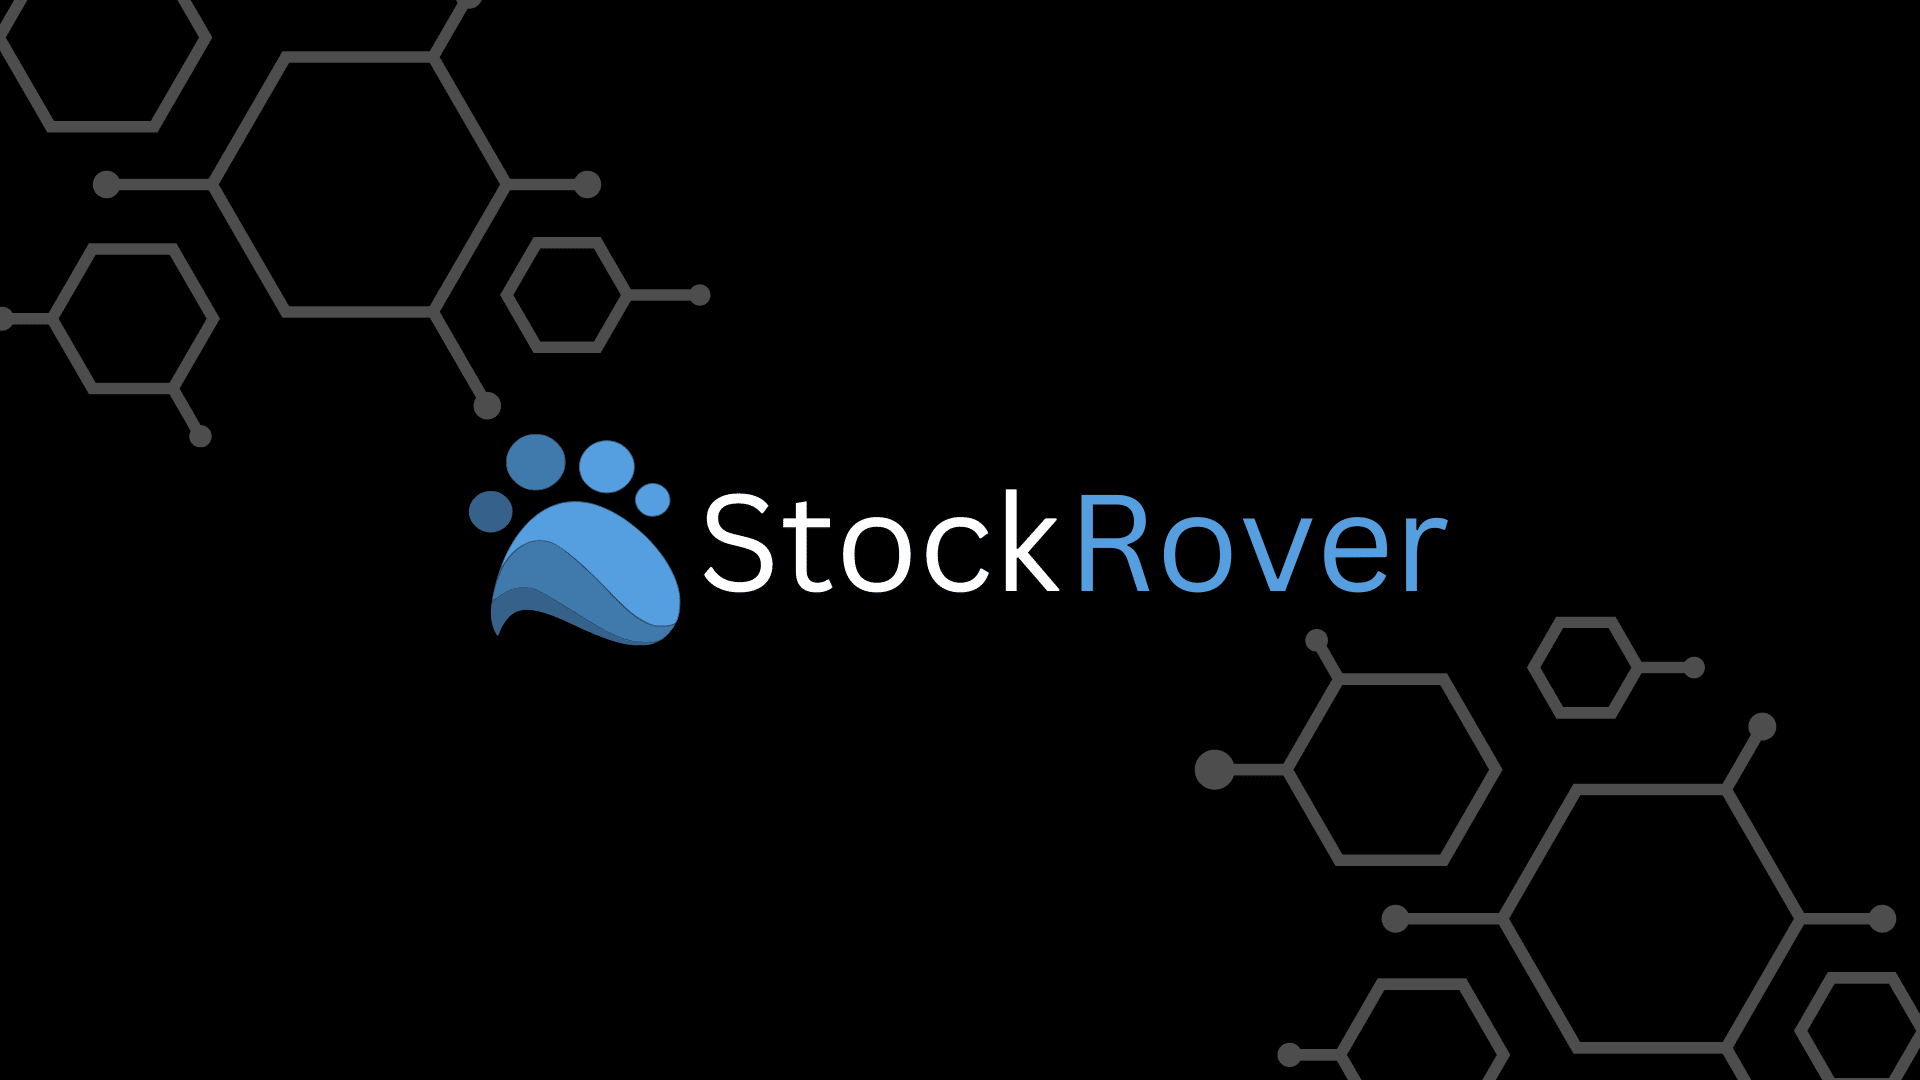 Stock Rover Logo